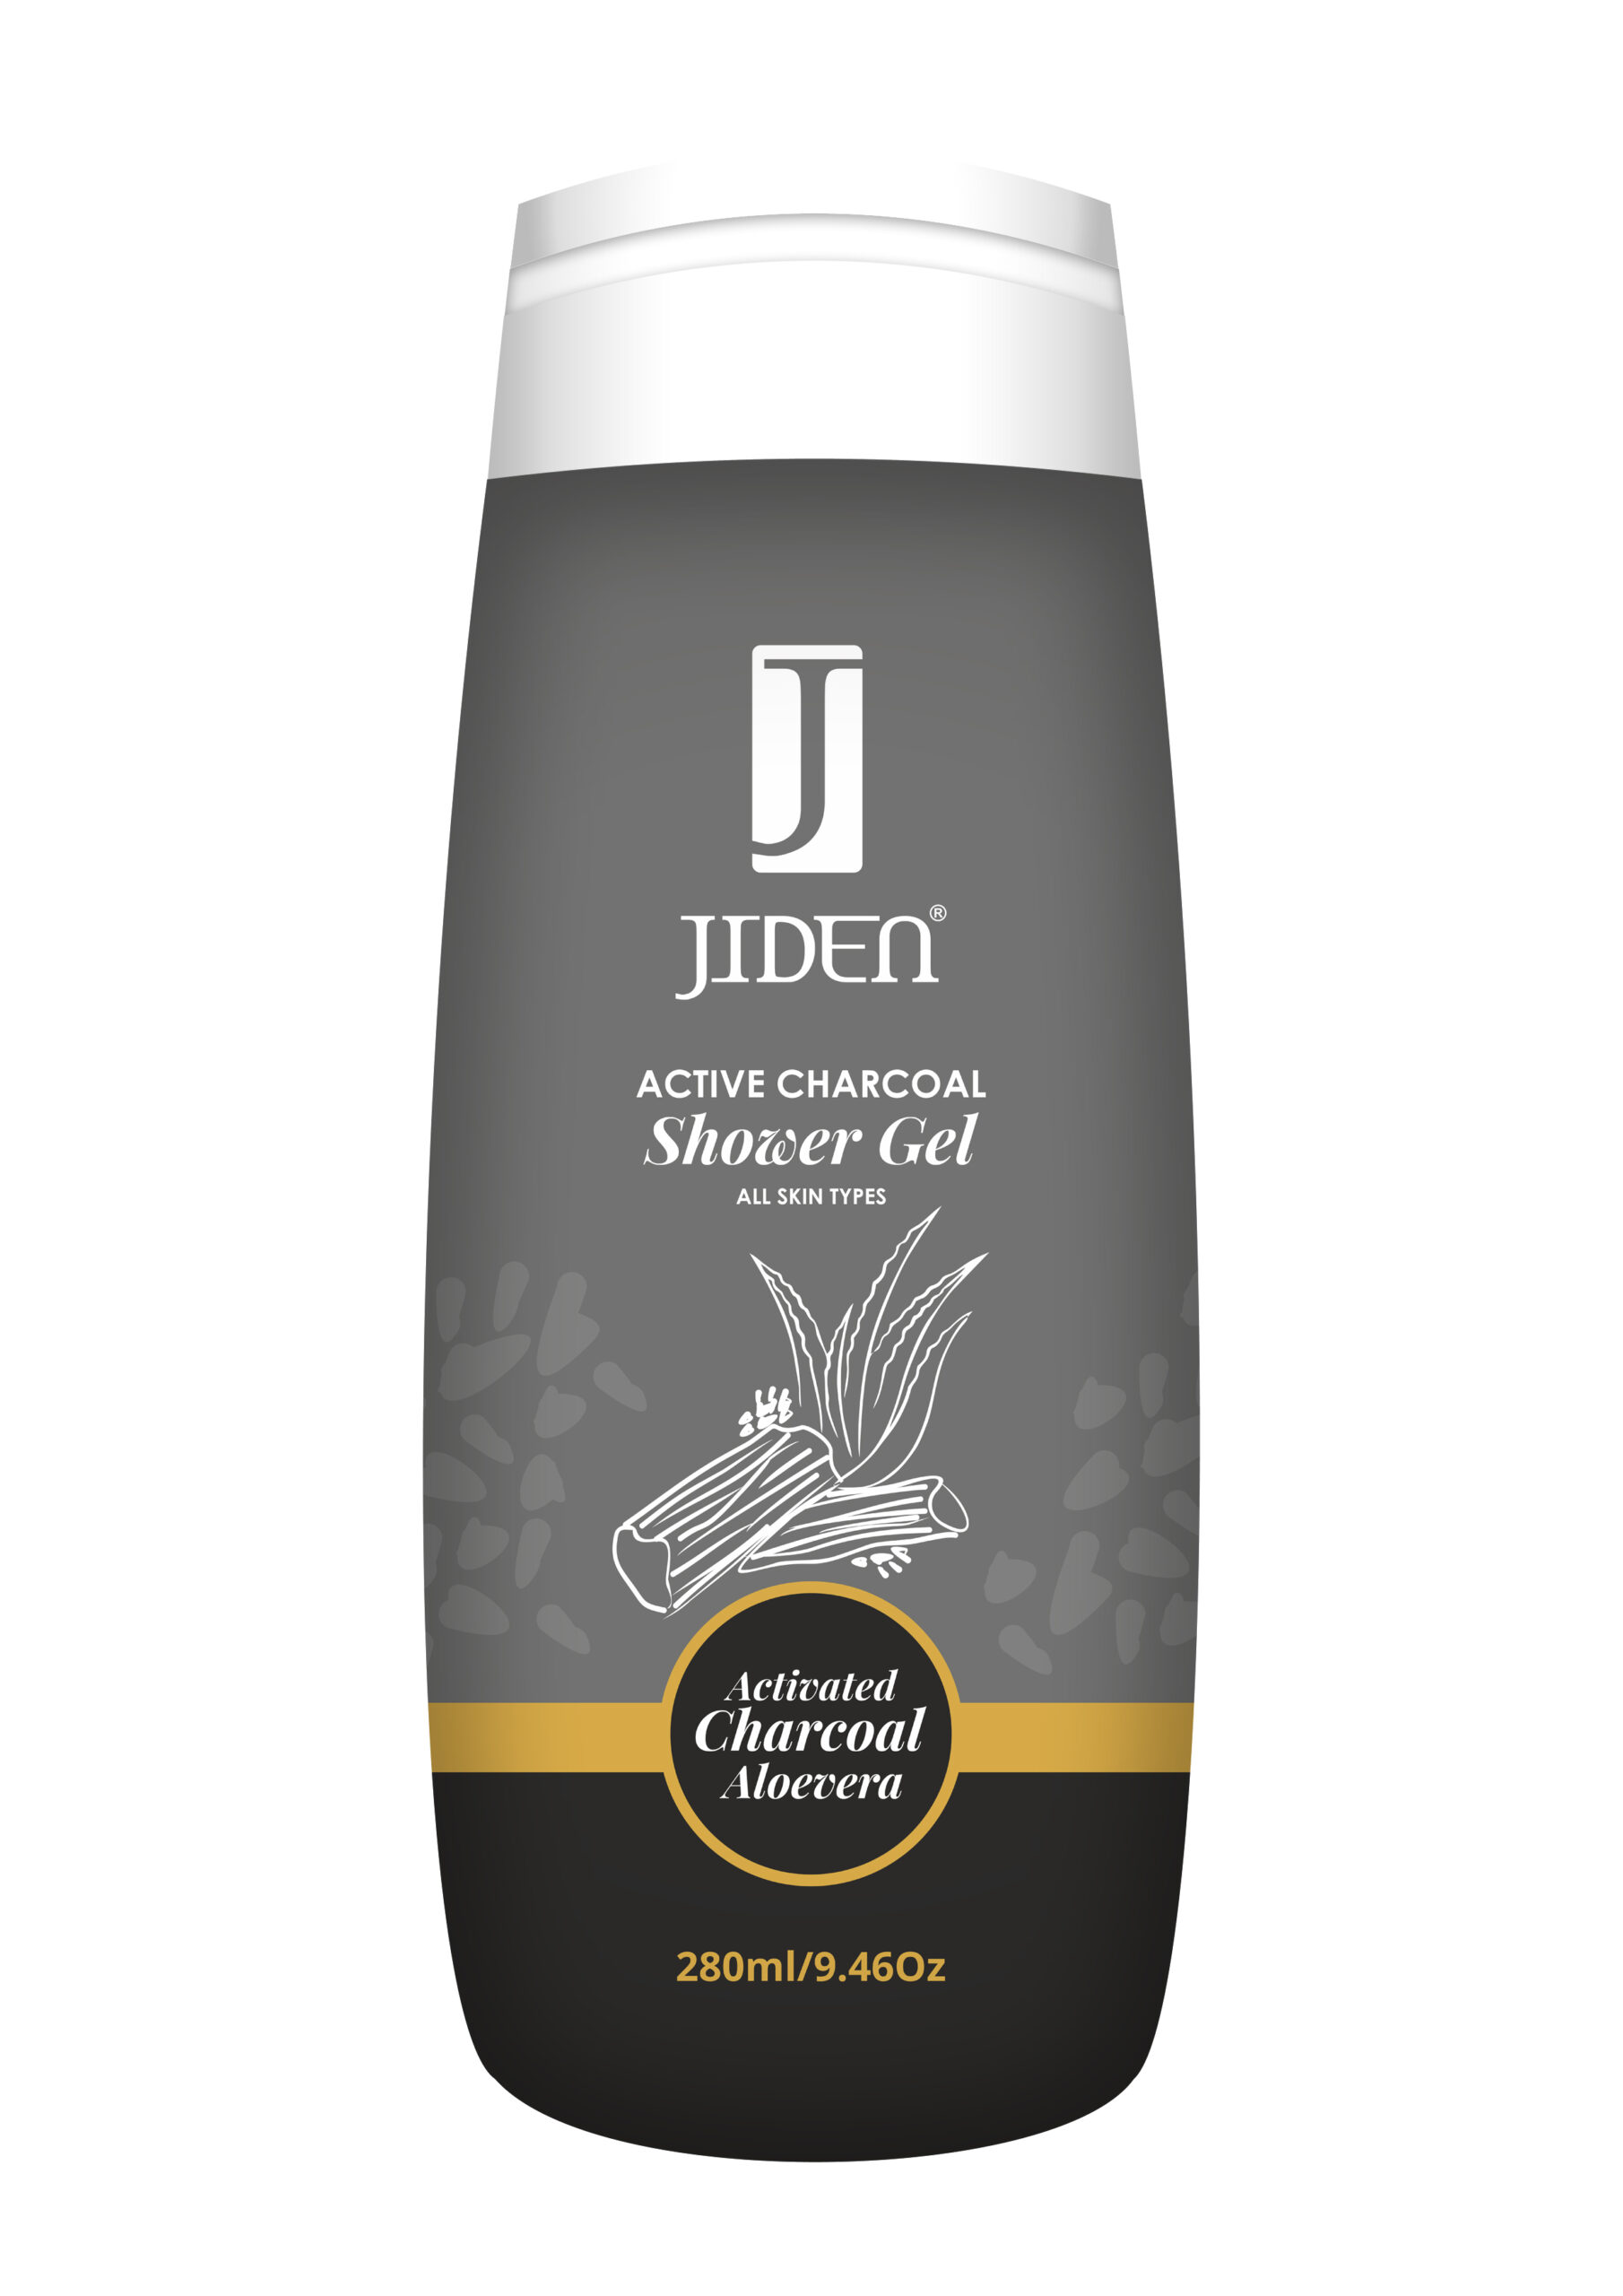 Jiden Active Charcoal Shower Gel